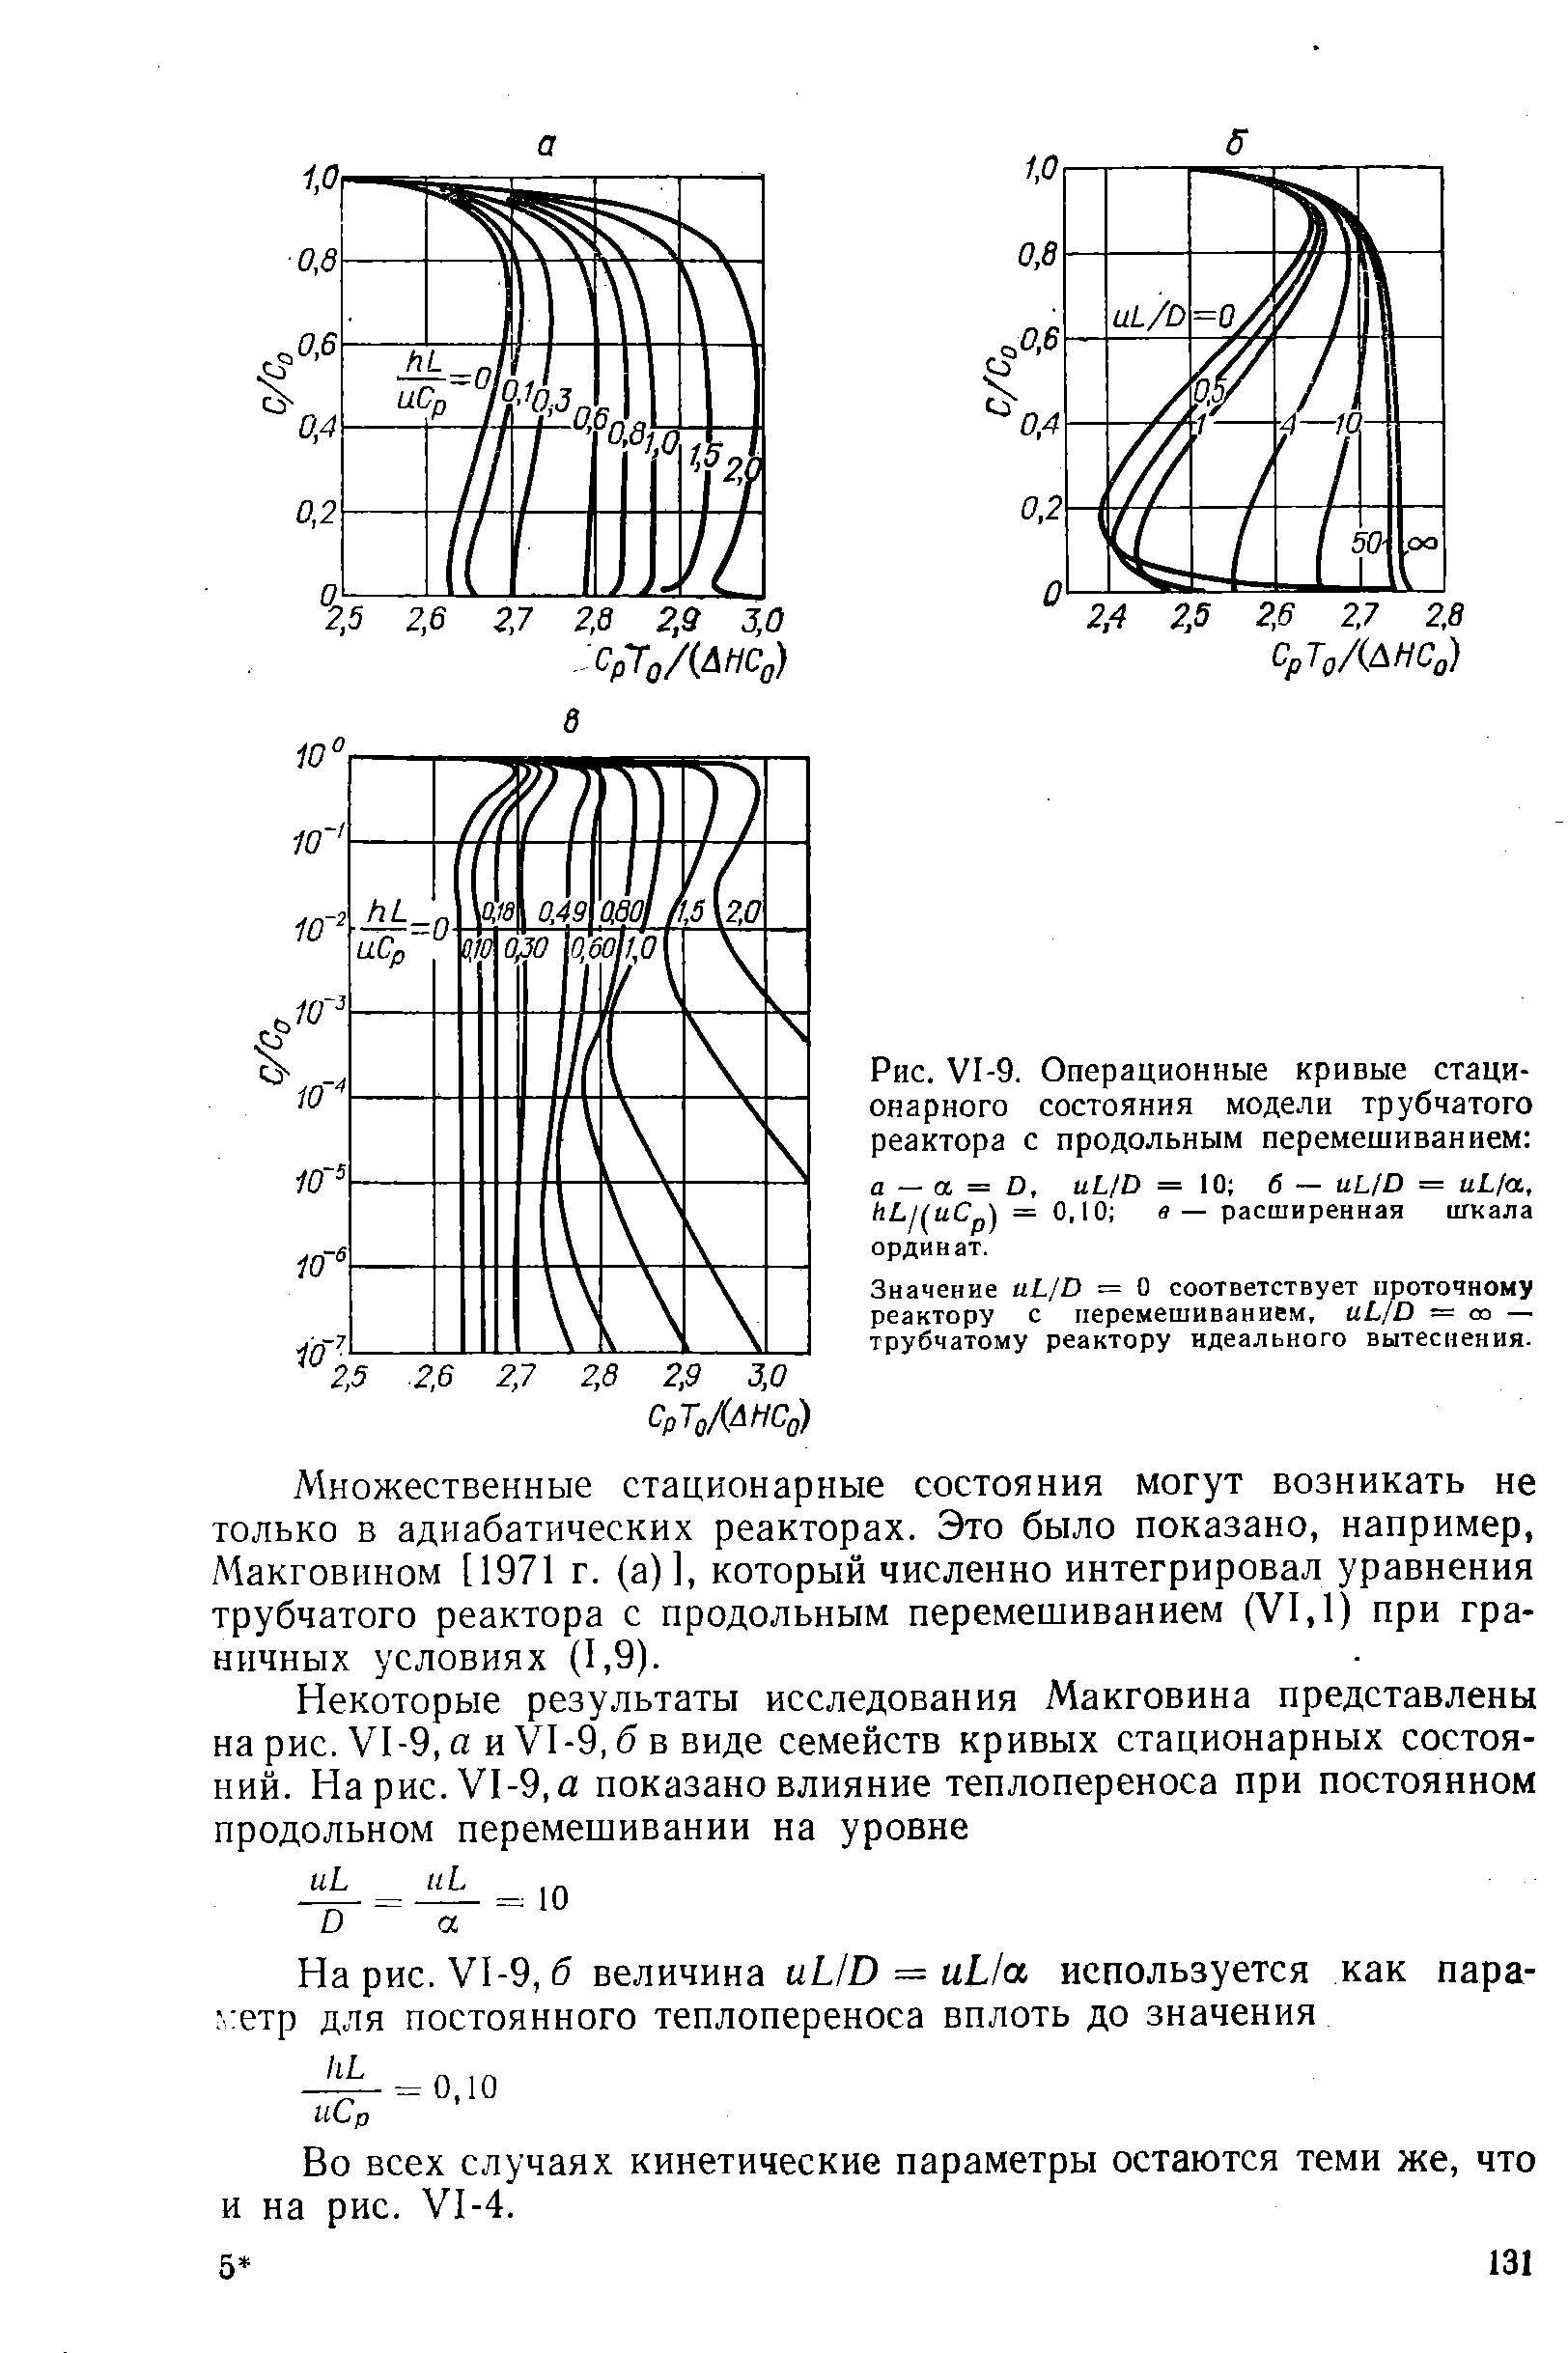 Множественные стационарные состояния могут возникать не только в адиабатических реакторах. Это было показано, например, Макговином [1971 г. (а)], который численно интегрировал уравнения трубчатого реактора с продольным перемешиванием (VI, 1) при граничных условиях (1,9).